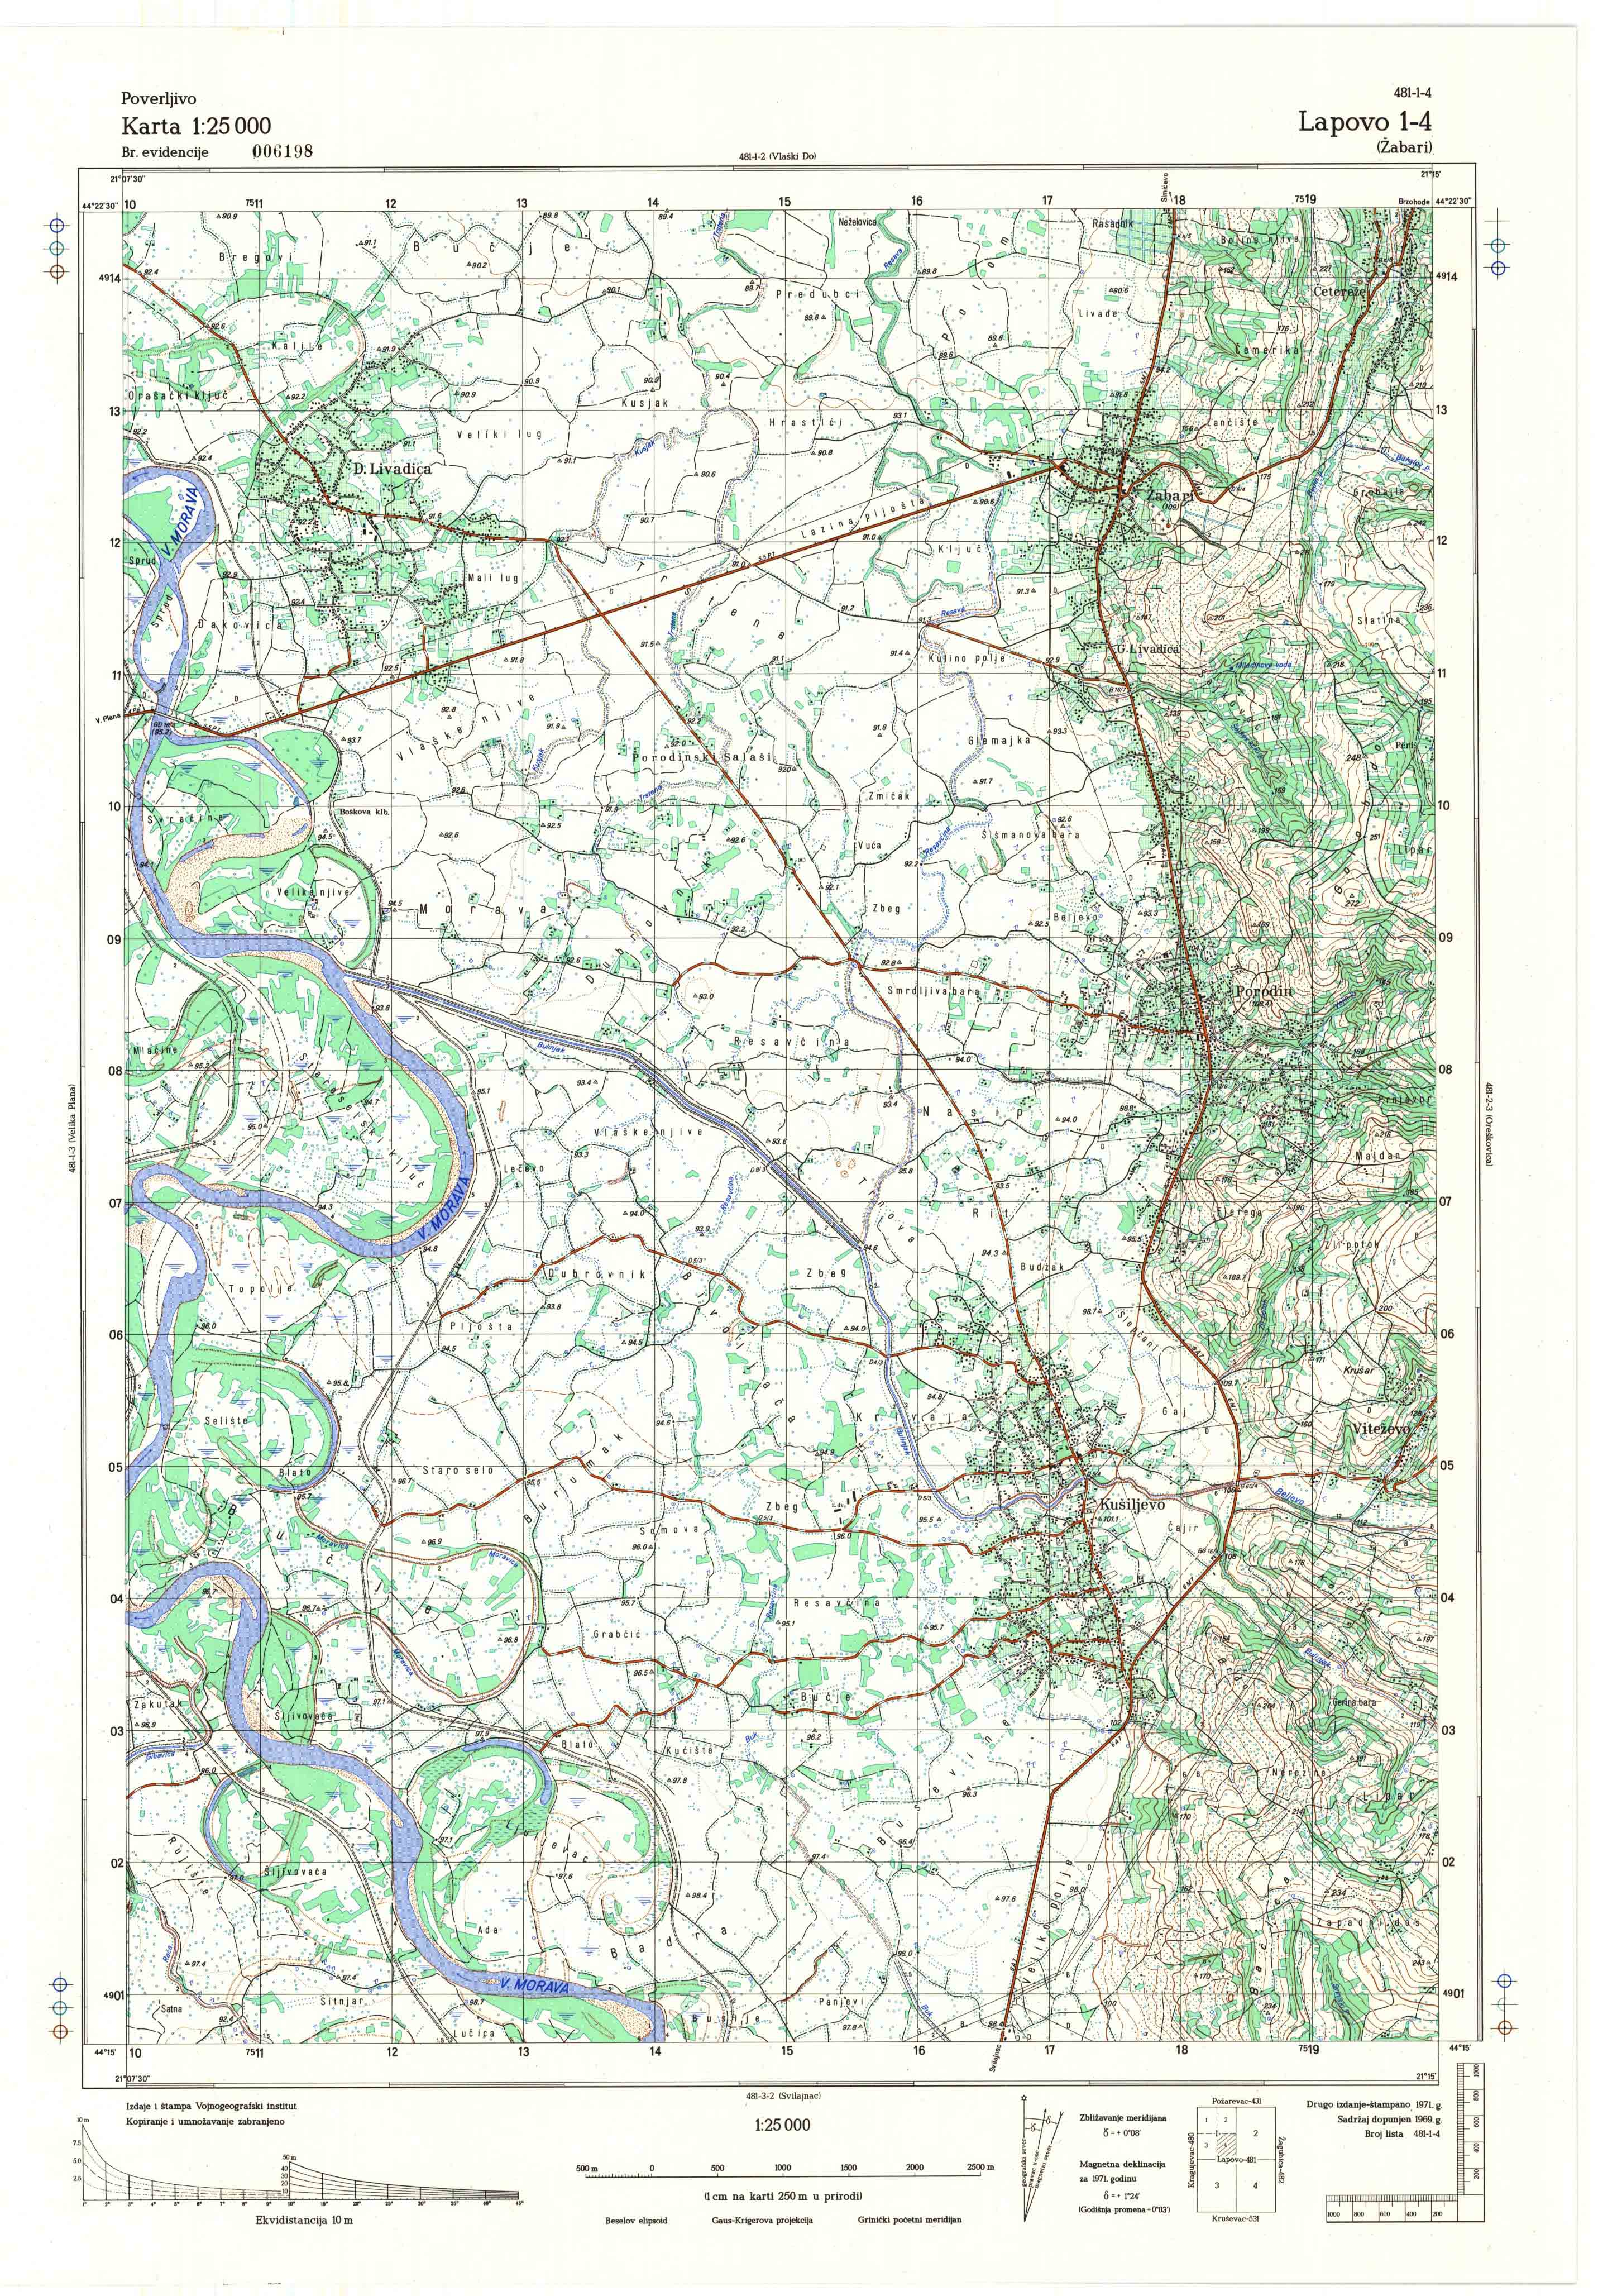  topografska karta srbije 25000 JNA  Lapovo